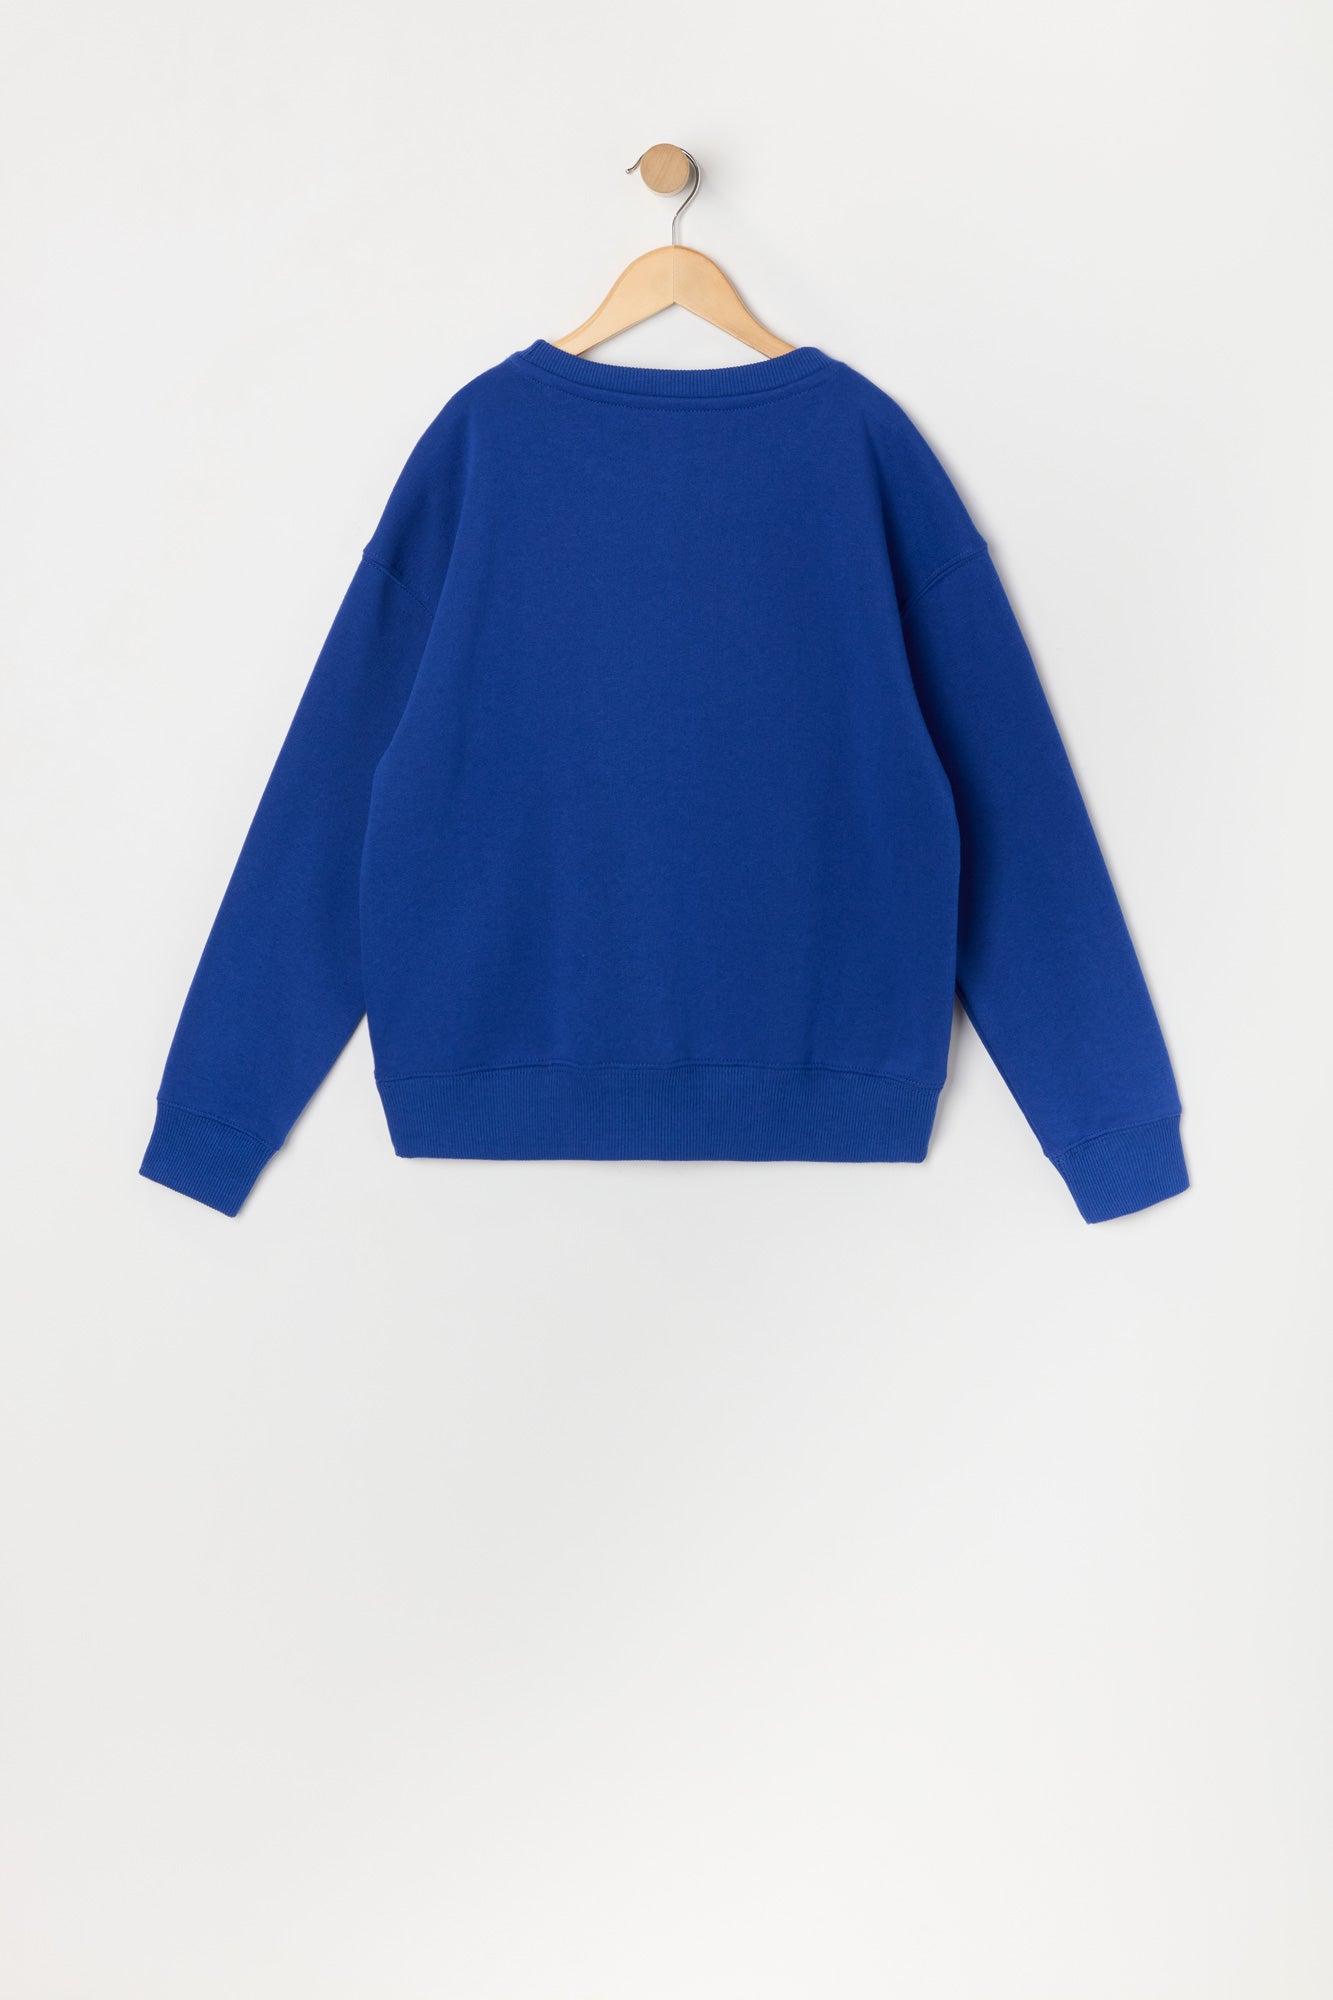 Boys Sk8 Collection Fleece Sweatshirt